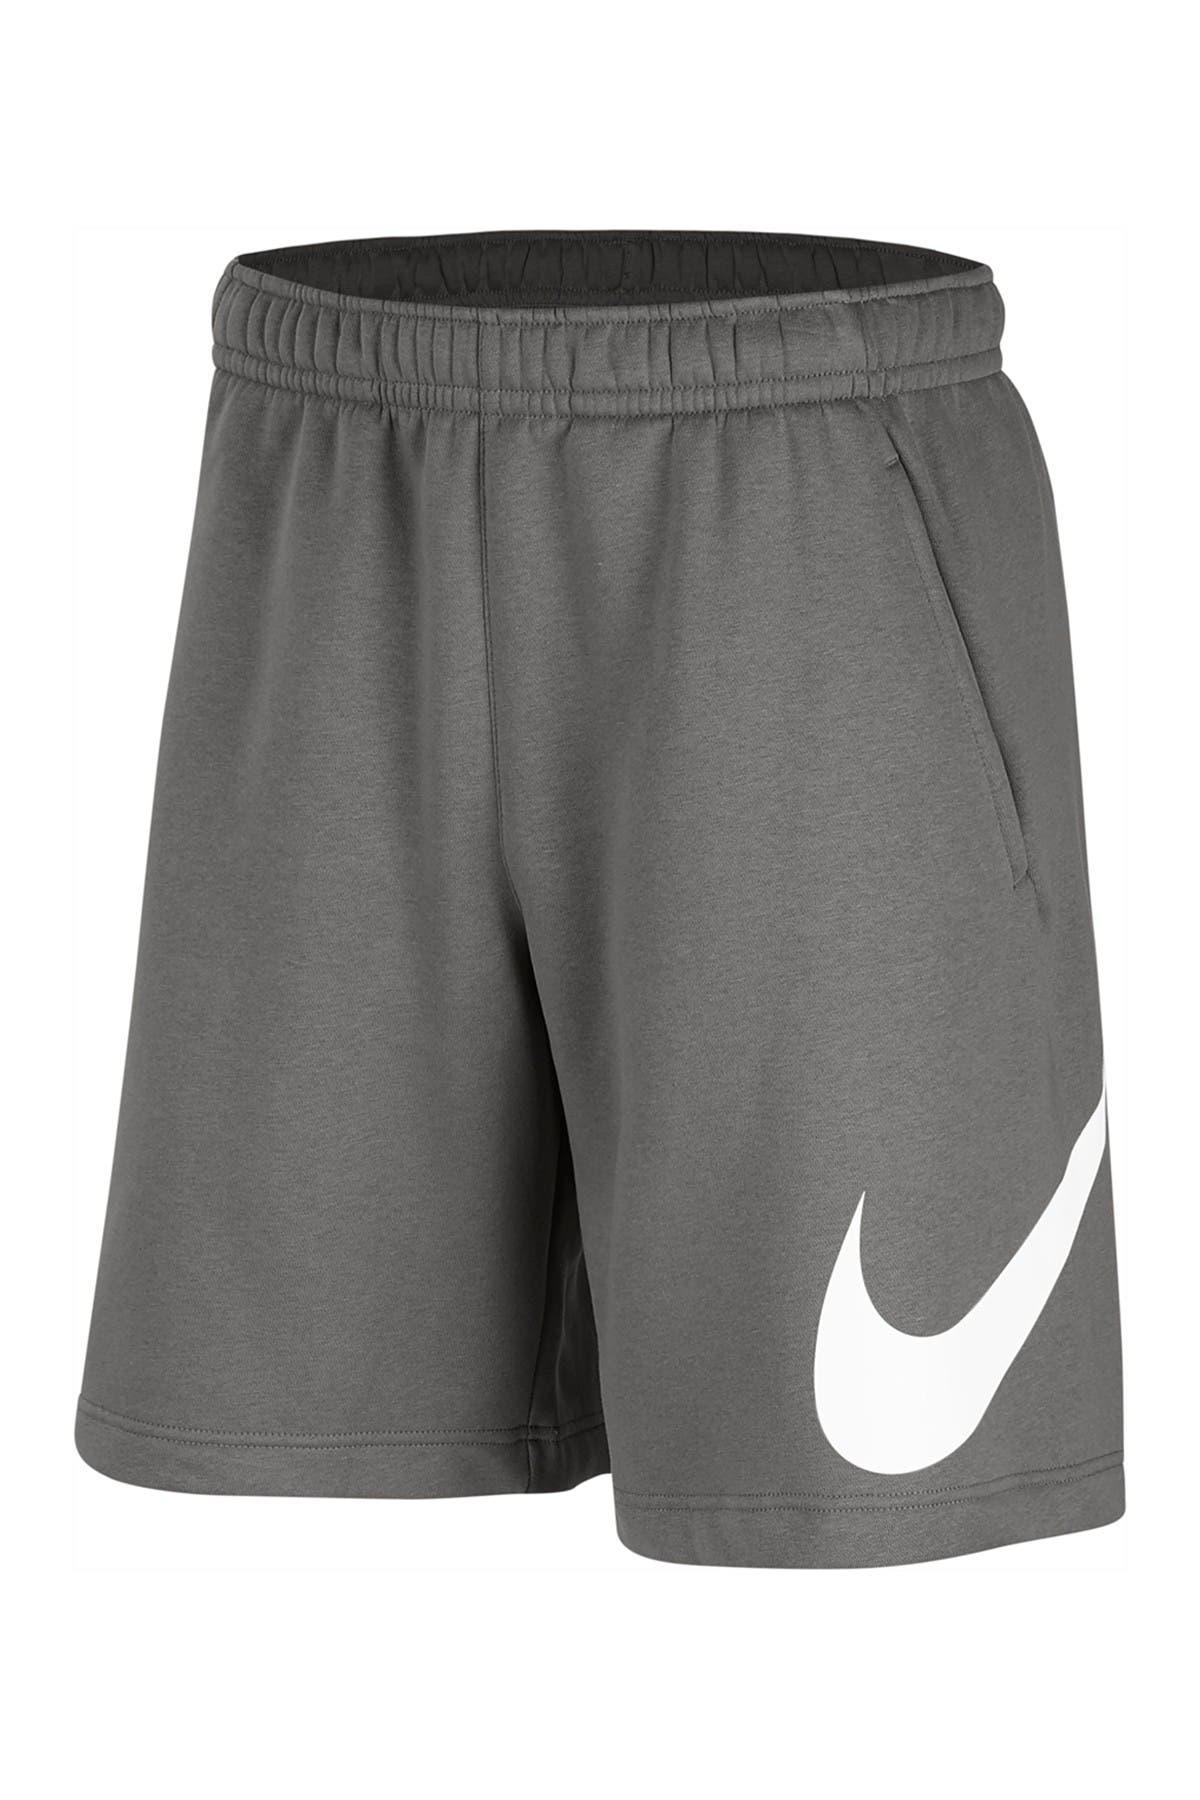 Nike Men's Shorts | Nordstrom Rack